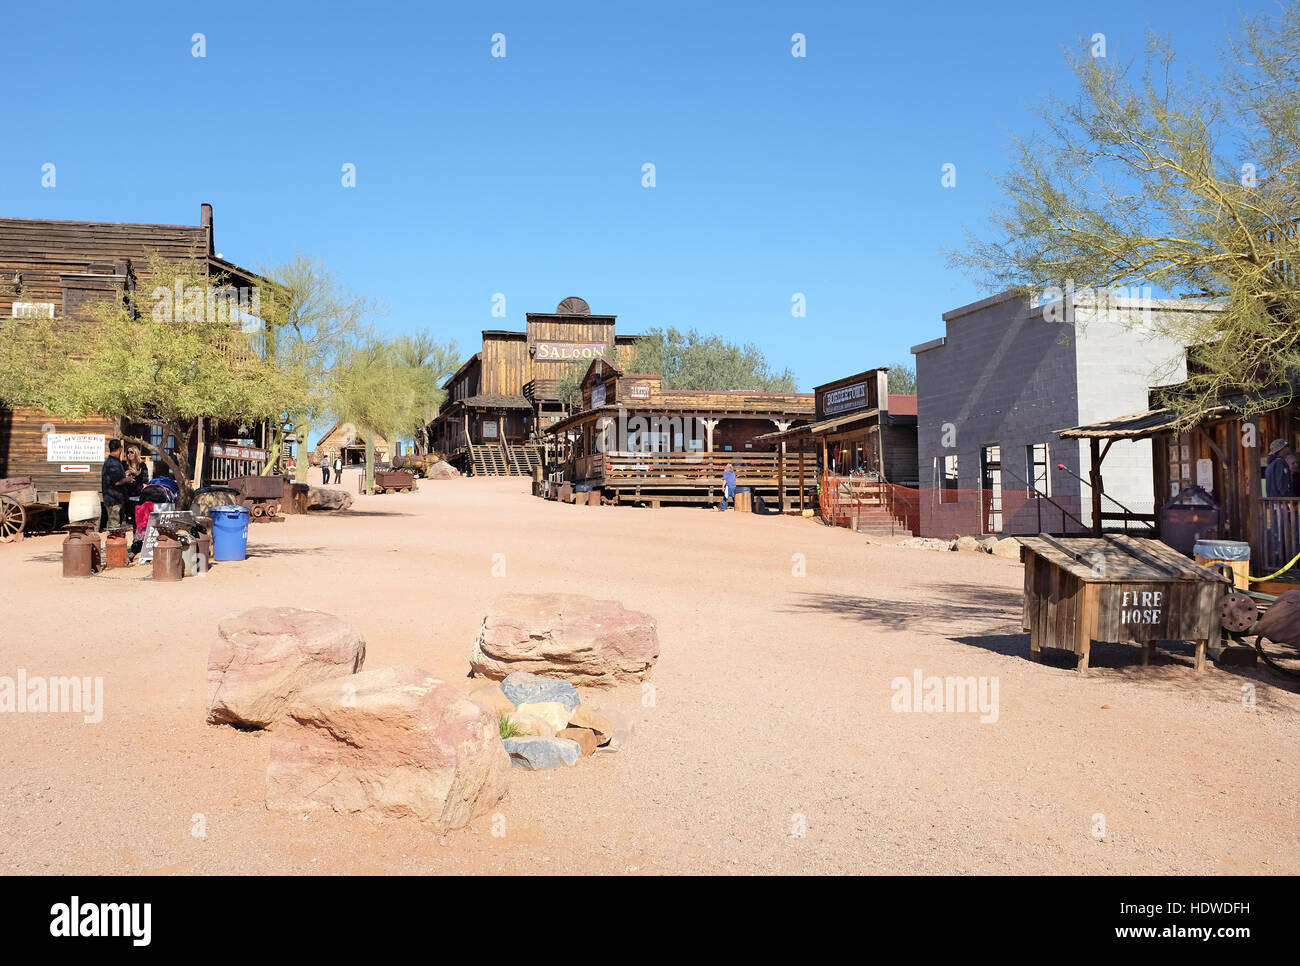 Goldfield Ghost Town Street Scene, dans Apache Junction, Arizona, au large de la Route 88. Jusqu'à vers le mammouth Steakhouse et tricorps. Banque D'Images